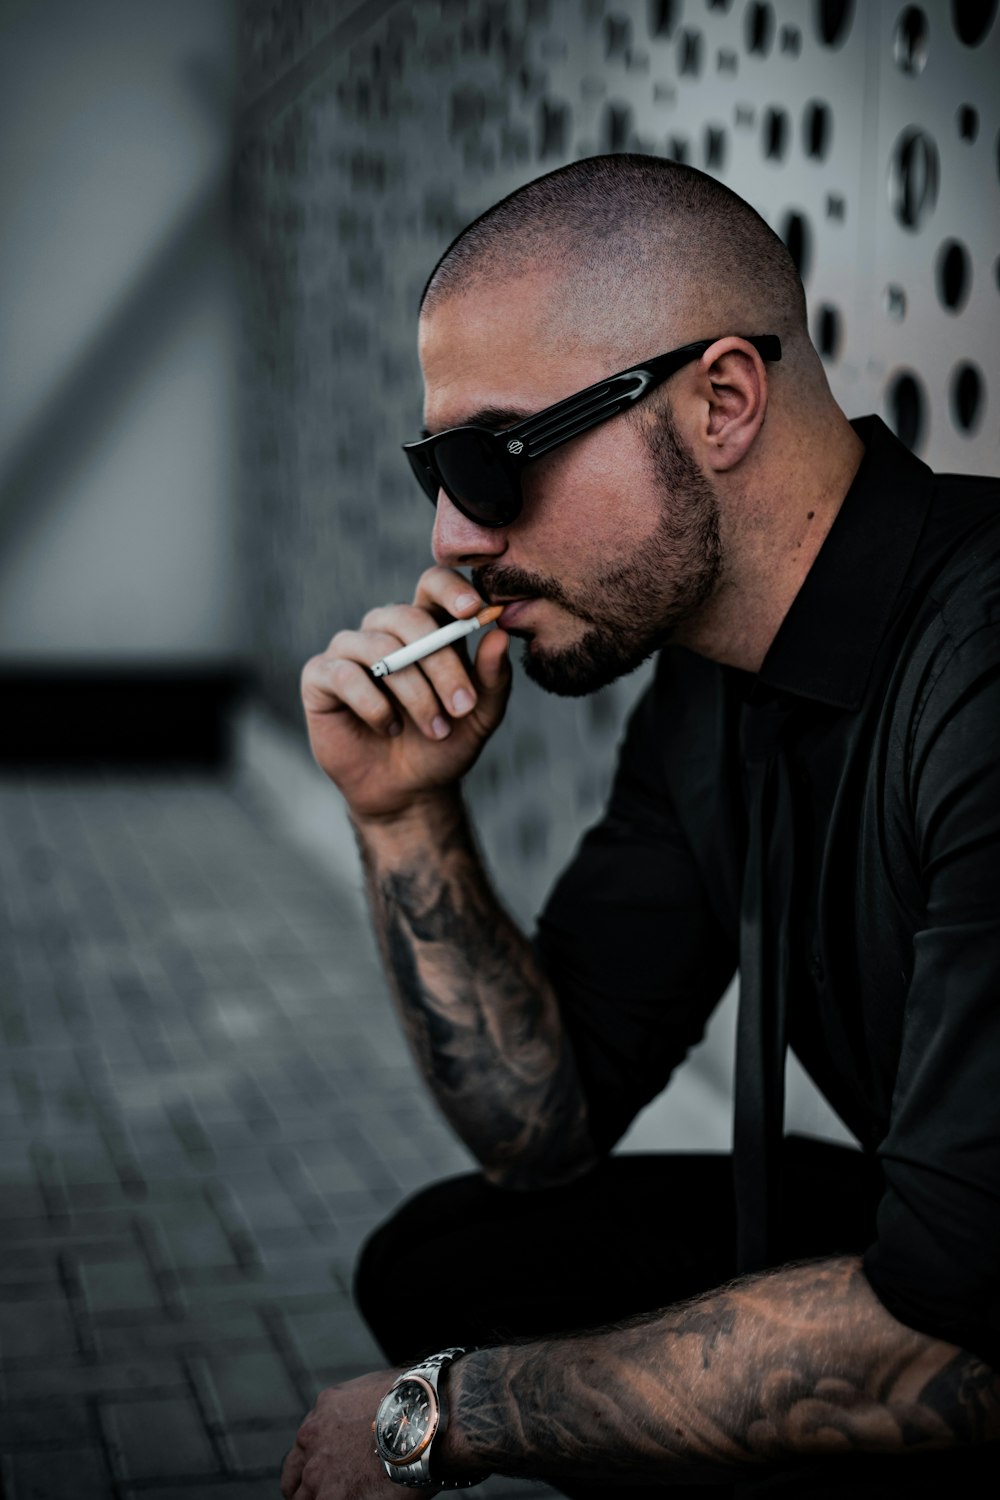 Mann in schwarzem Hemd rauchende Zigarette